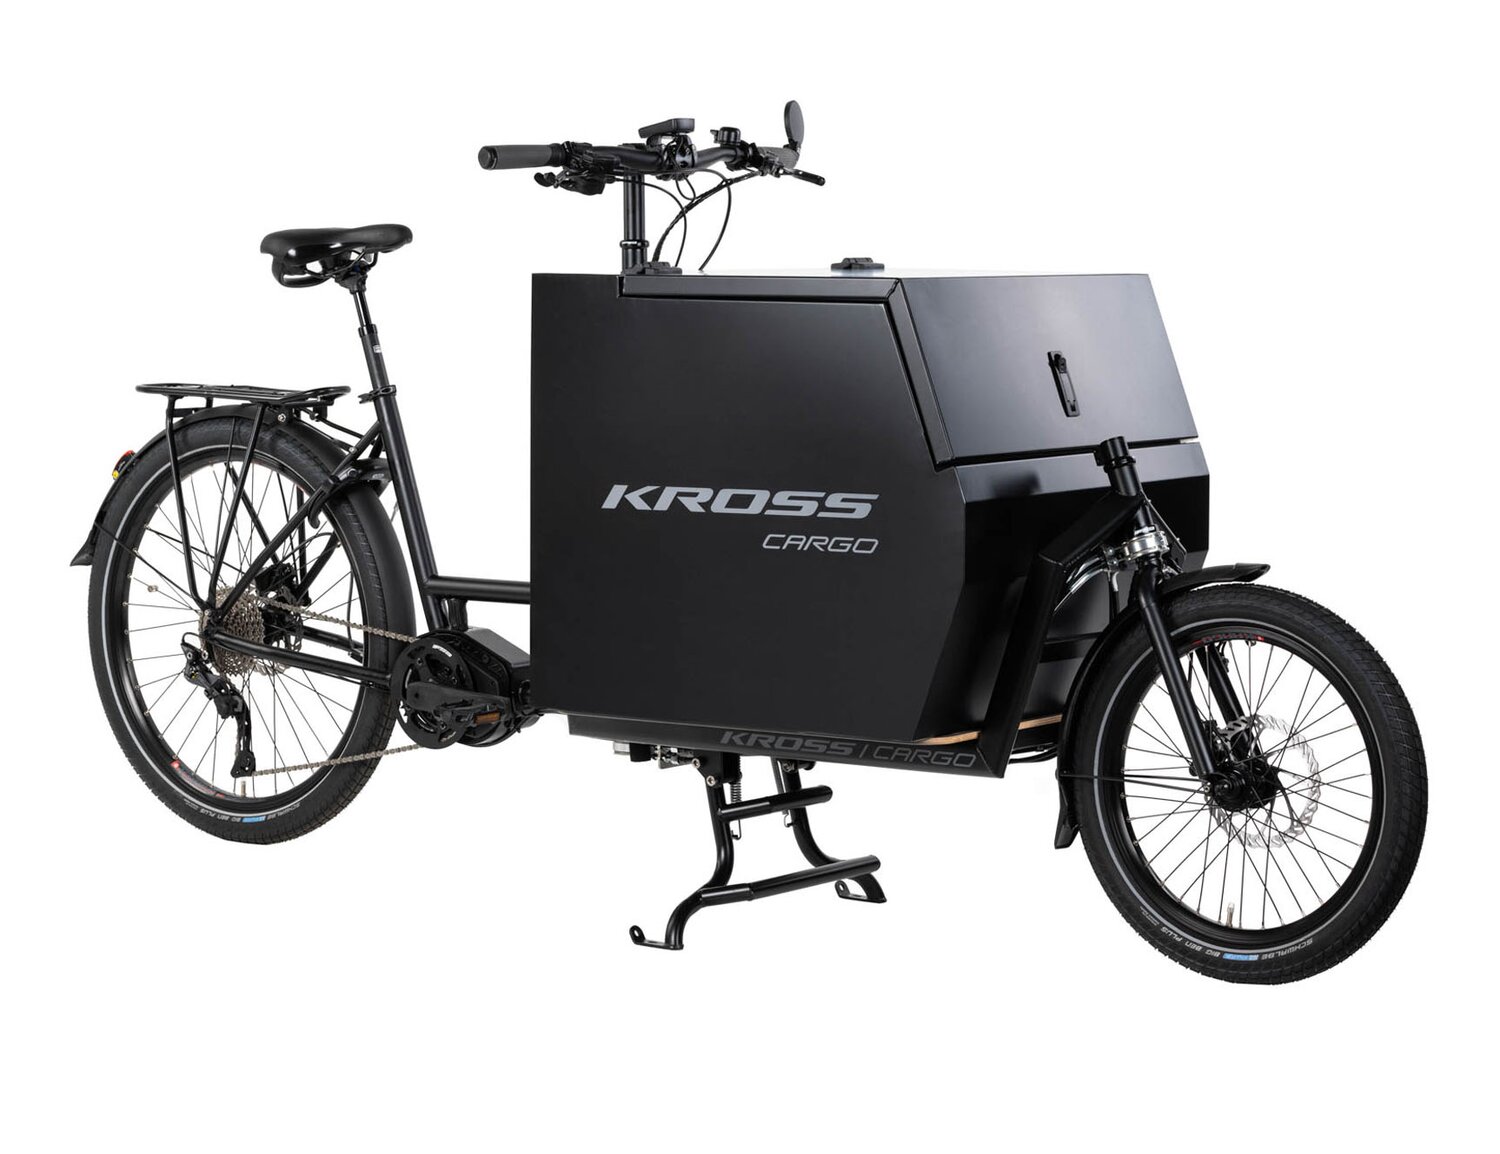  Elektryczny rower cargo Ebike KROSS E-Cargo 1.0 Business na stalowej ramie w kolorze czarnym wyposażony w osprzęt Shimano oraz elektryczny napęd Oli 